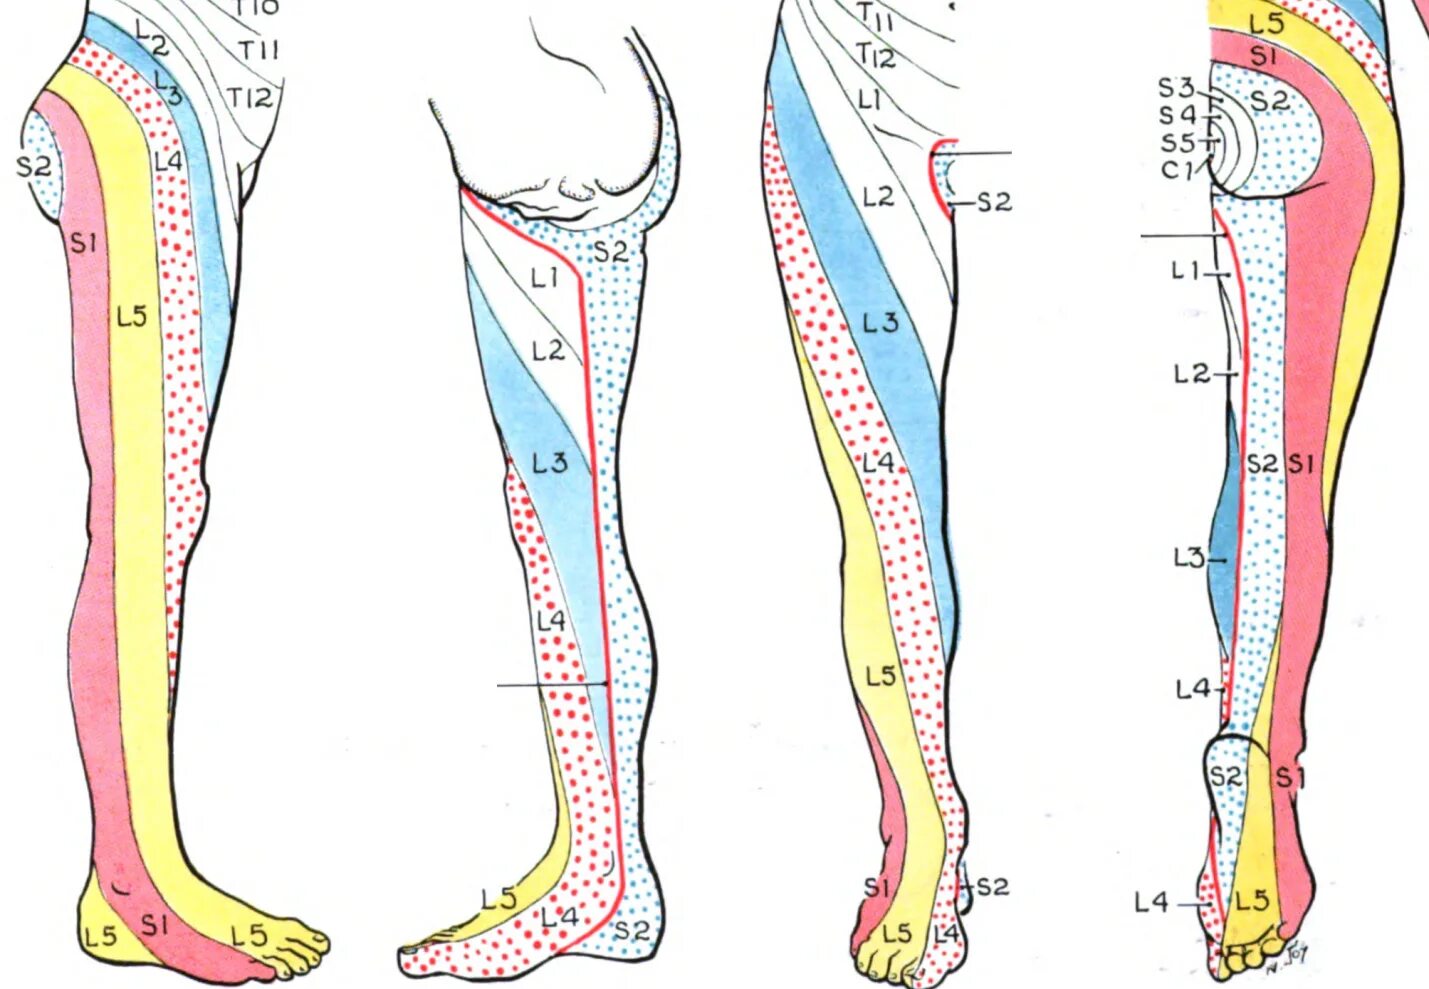 Боли в ноге от бедра до ступни. Радикулопатия диска l3-l4. Дерматом l4-l5. Радикулопатия l5-s1. Иннервация грыжи l5-s1.